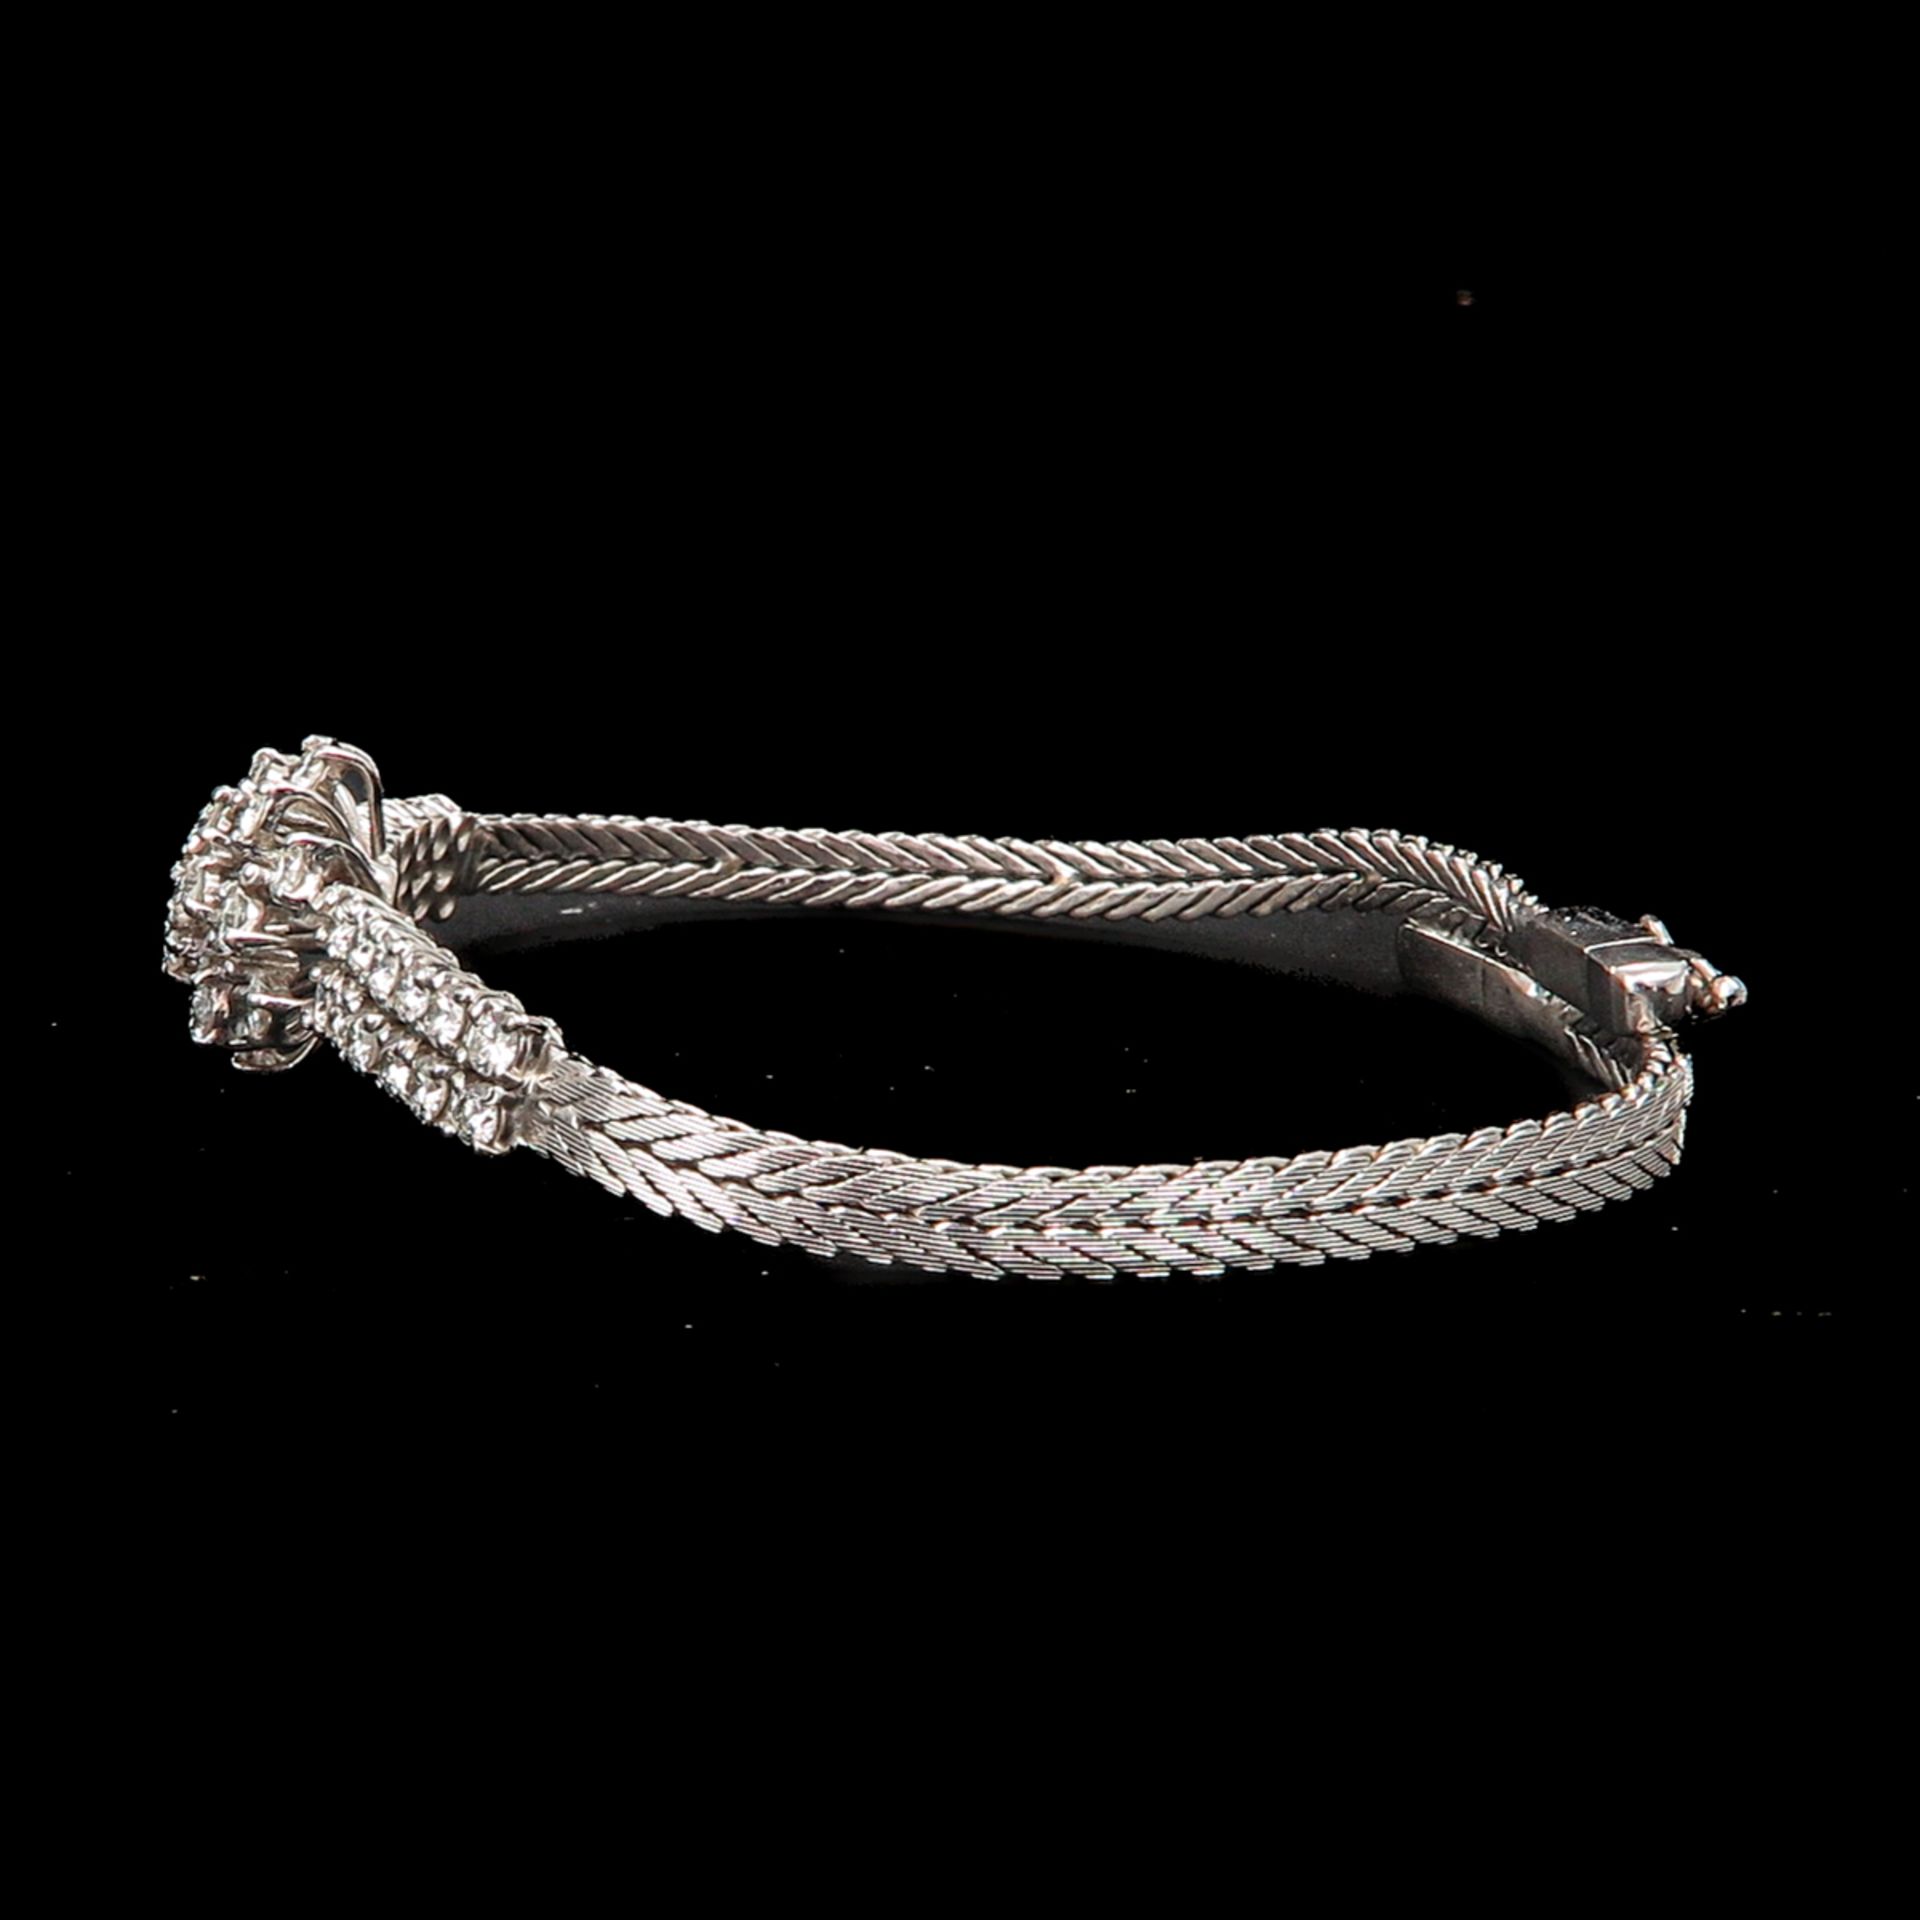 A Diamond Bracelet - Image 2 of 3